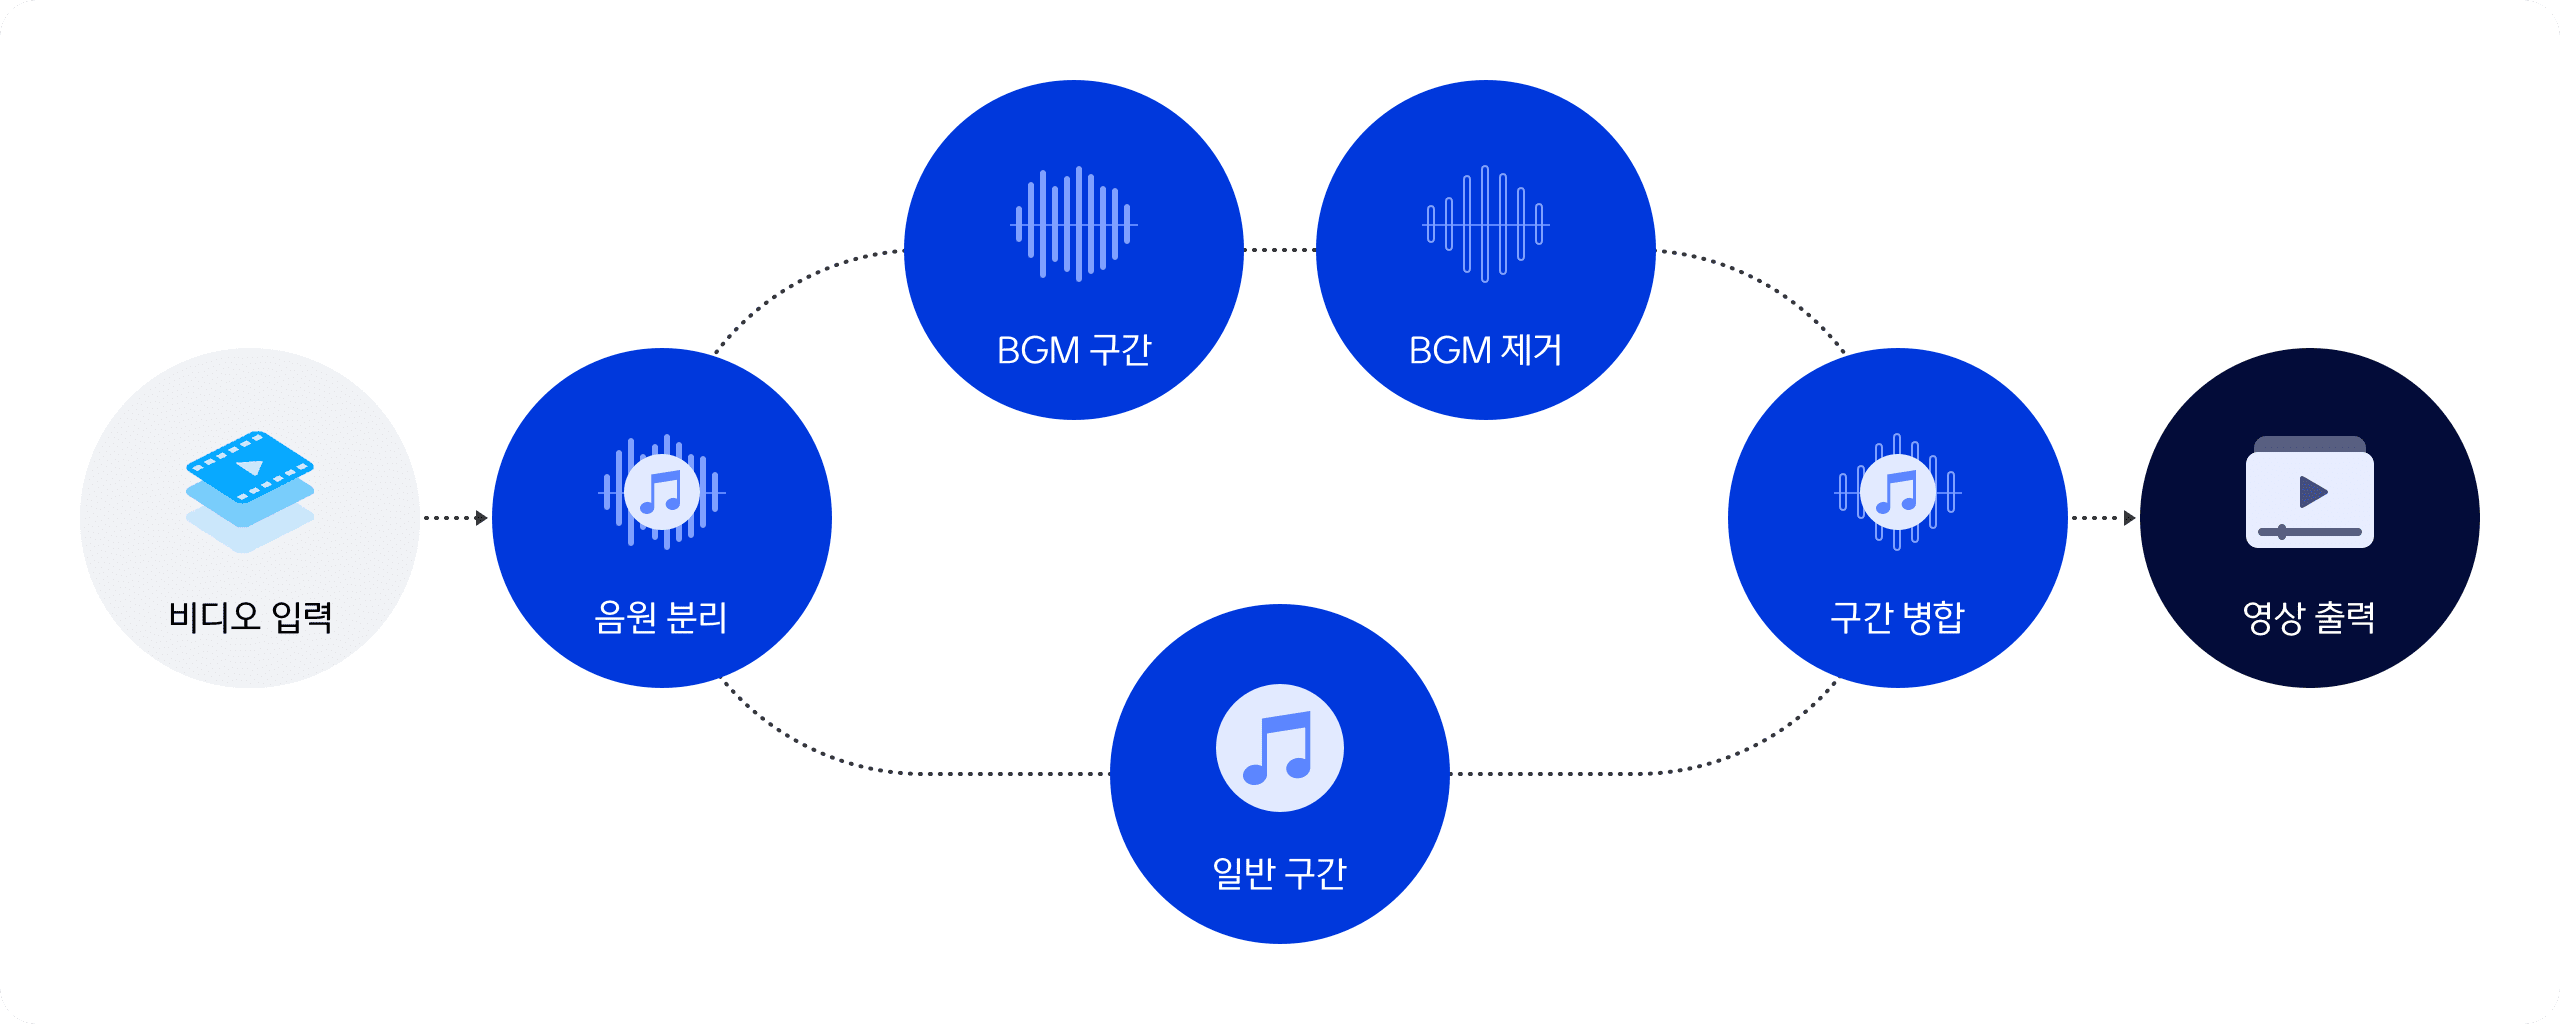 비디오 입력, 음원 분리, BGM 구간에서 BGM 제거, 앨범 구간, 구간 병합하여 영상 출력